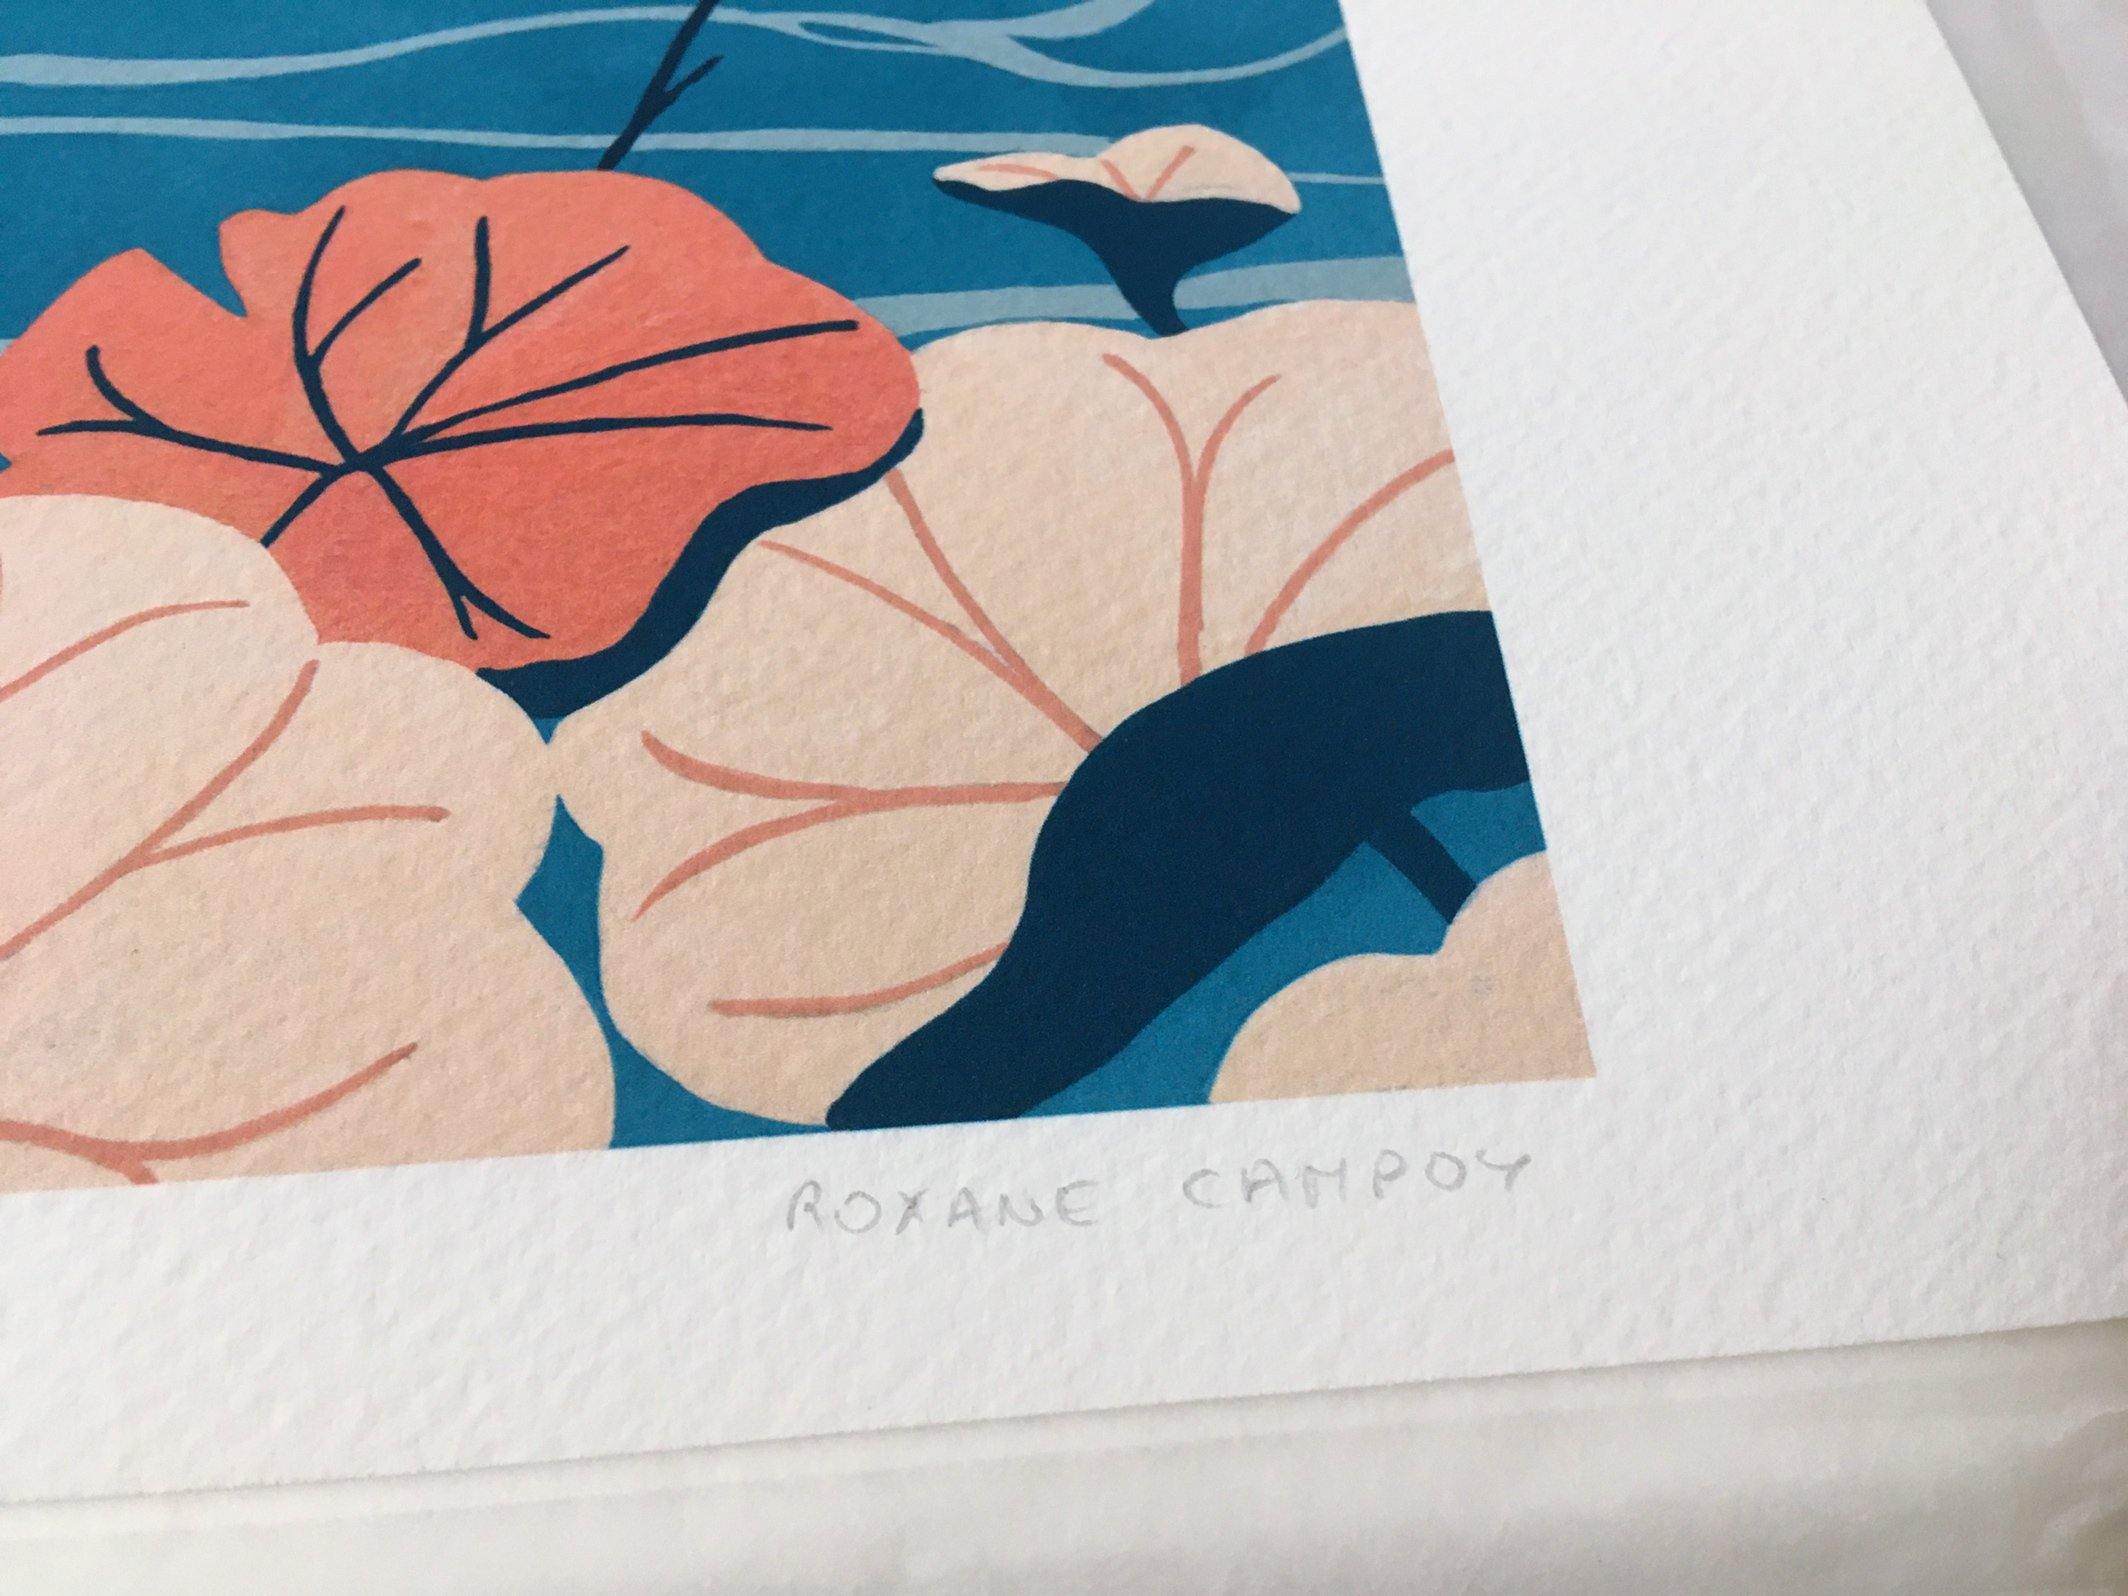 Photographie zoom sur la signature du tirage d'art de l'affiche colorée bleu et corail, dessinée par Roxane Campoy illustrant des grues japonaises.